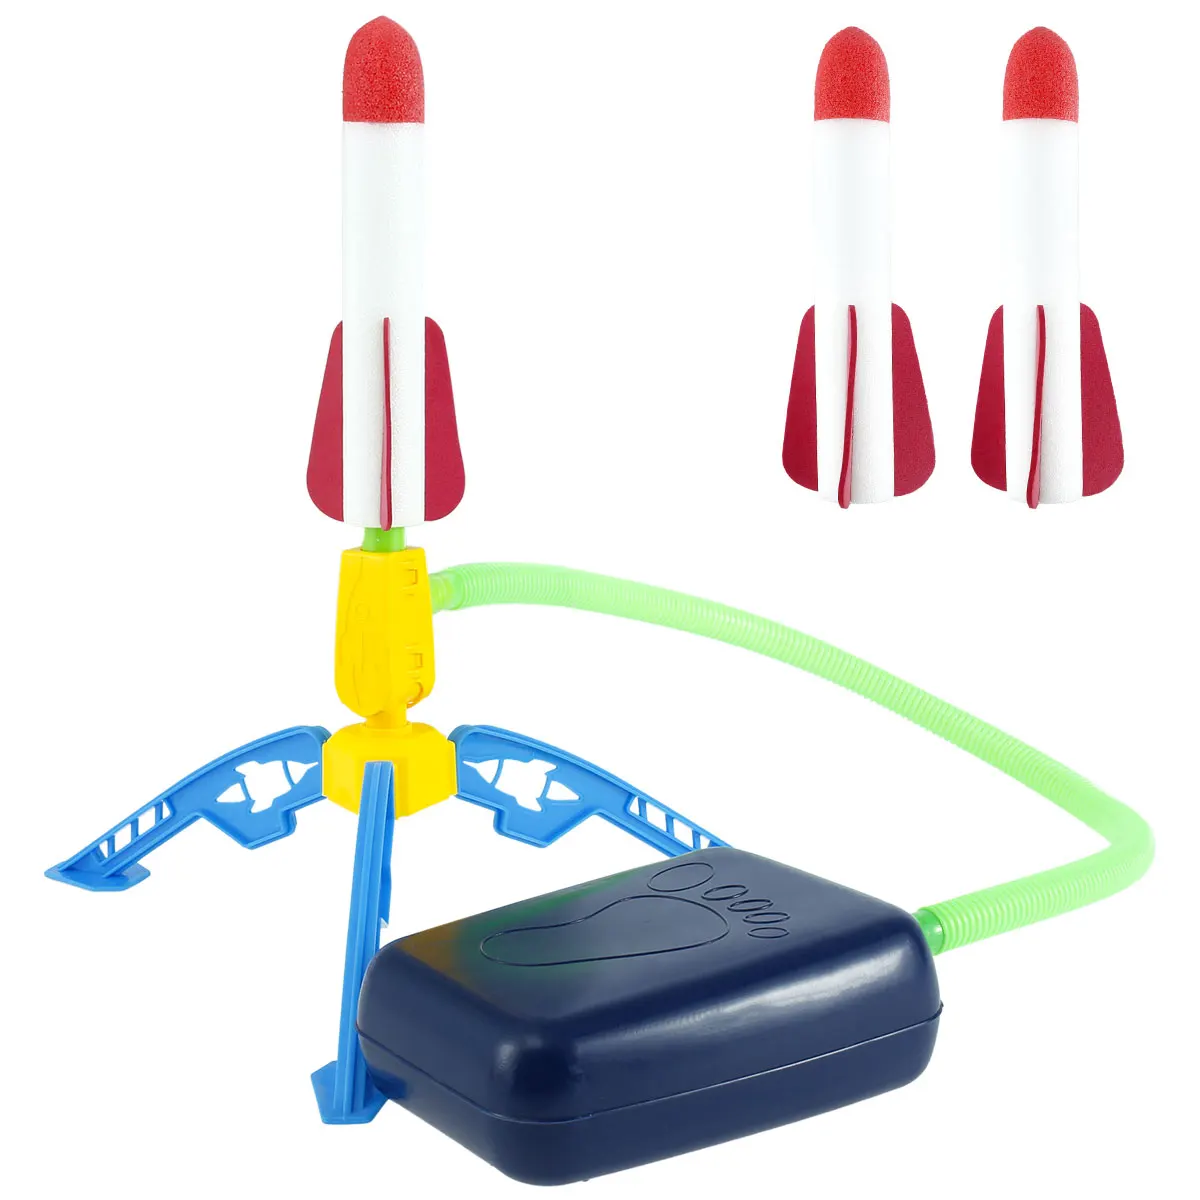 

Stomp игрушечные ракеты оригинальная дуальная ракетка, пусковая установка для трюков, самолетов, пусковая установка для 3 ракет с подсветкой, ...